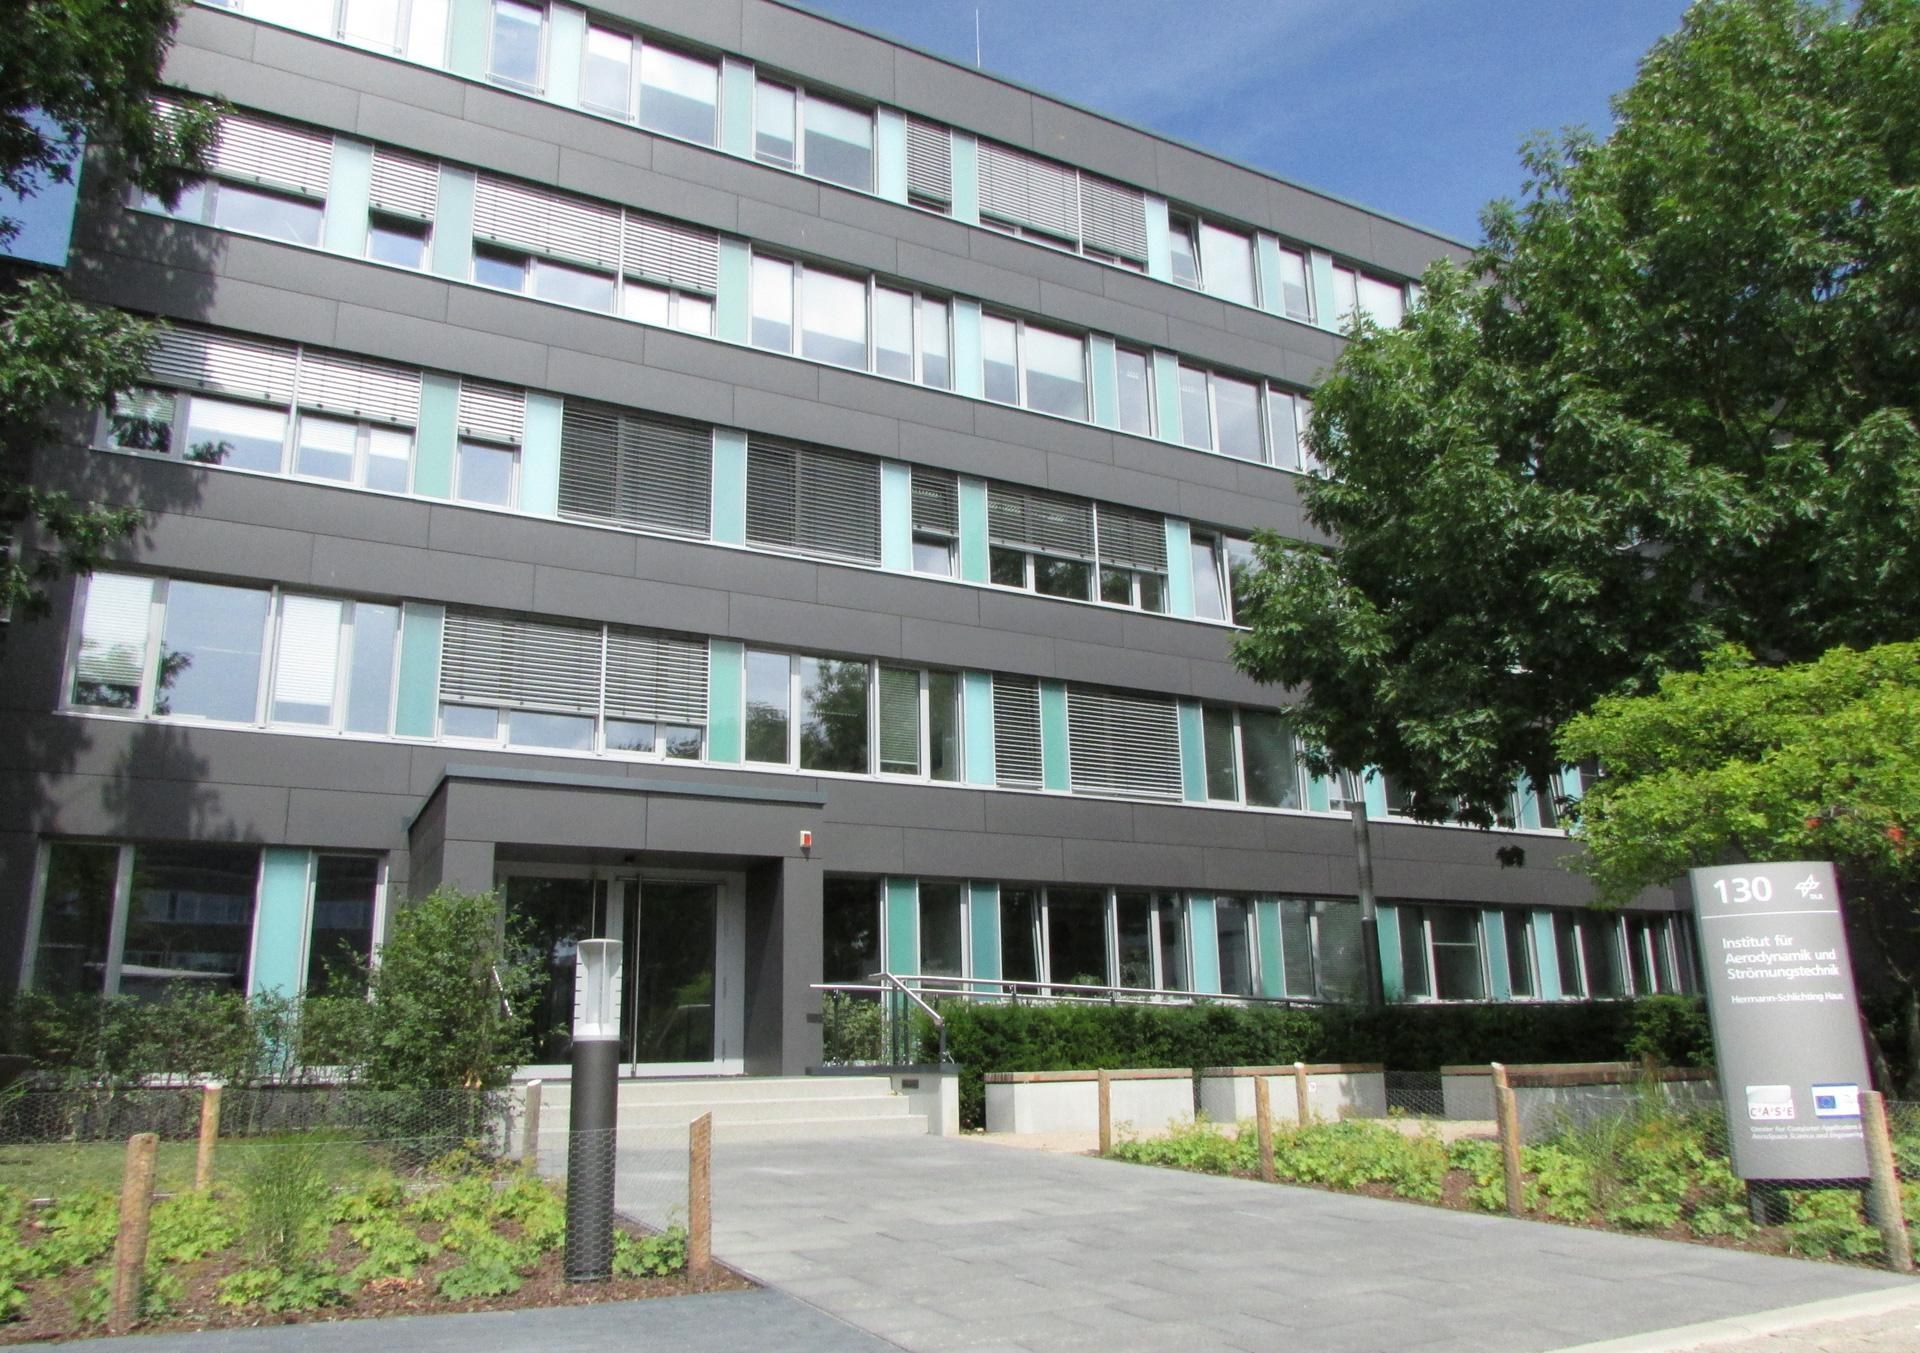 Gebäude Institut für Aerodynamik und Strömungstechnik in Braunschweig